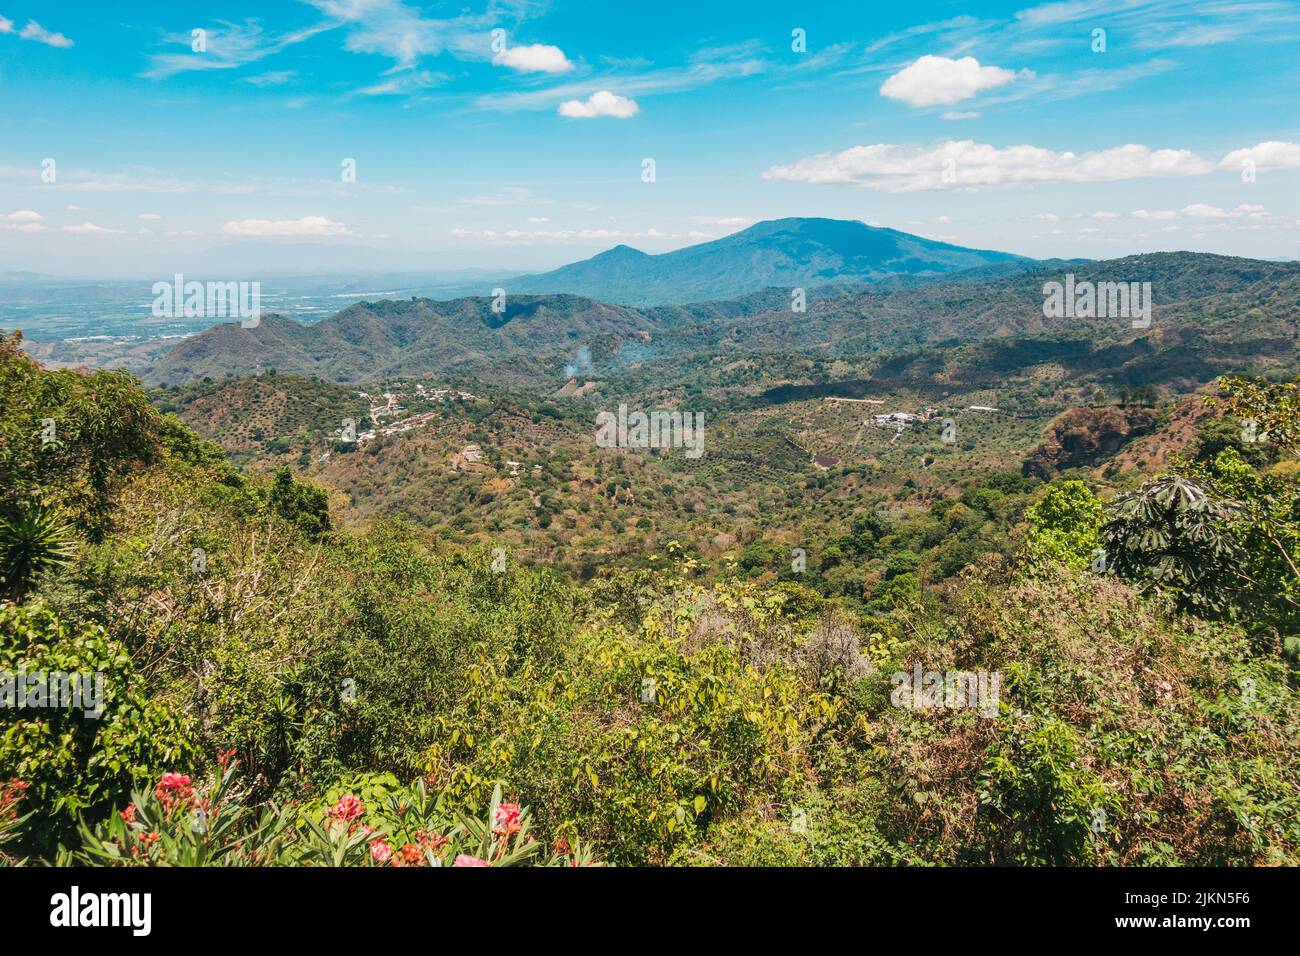 Mirando al pequeño pueblo rural de Talnique, ubicado en las montañas del interior de El Salvador Foto de stock